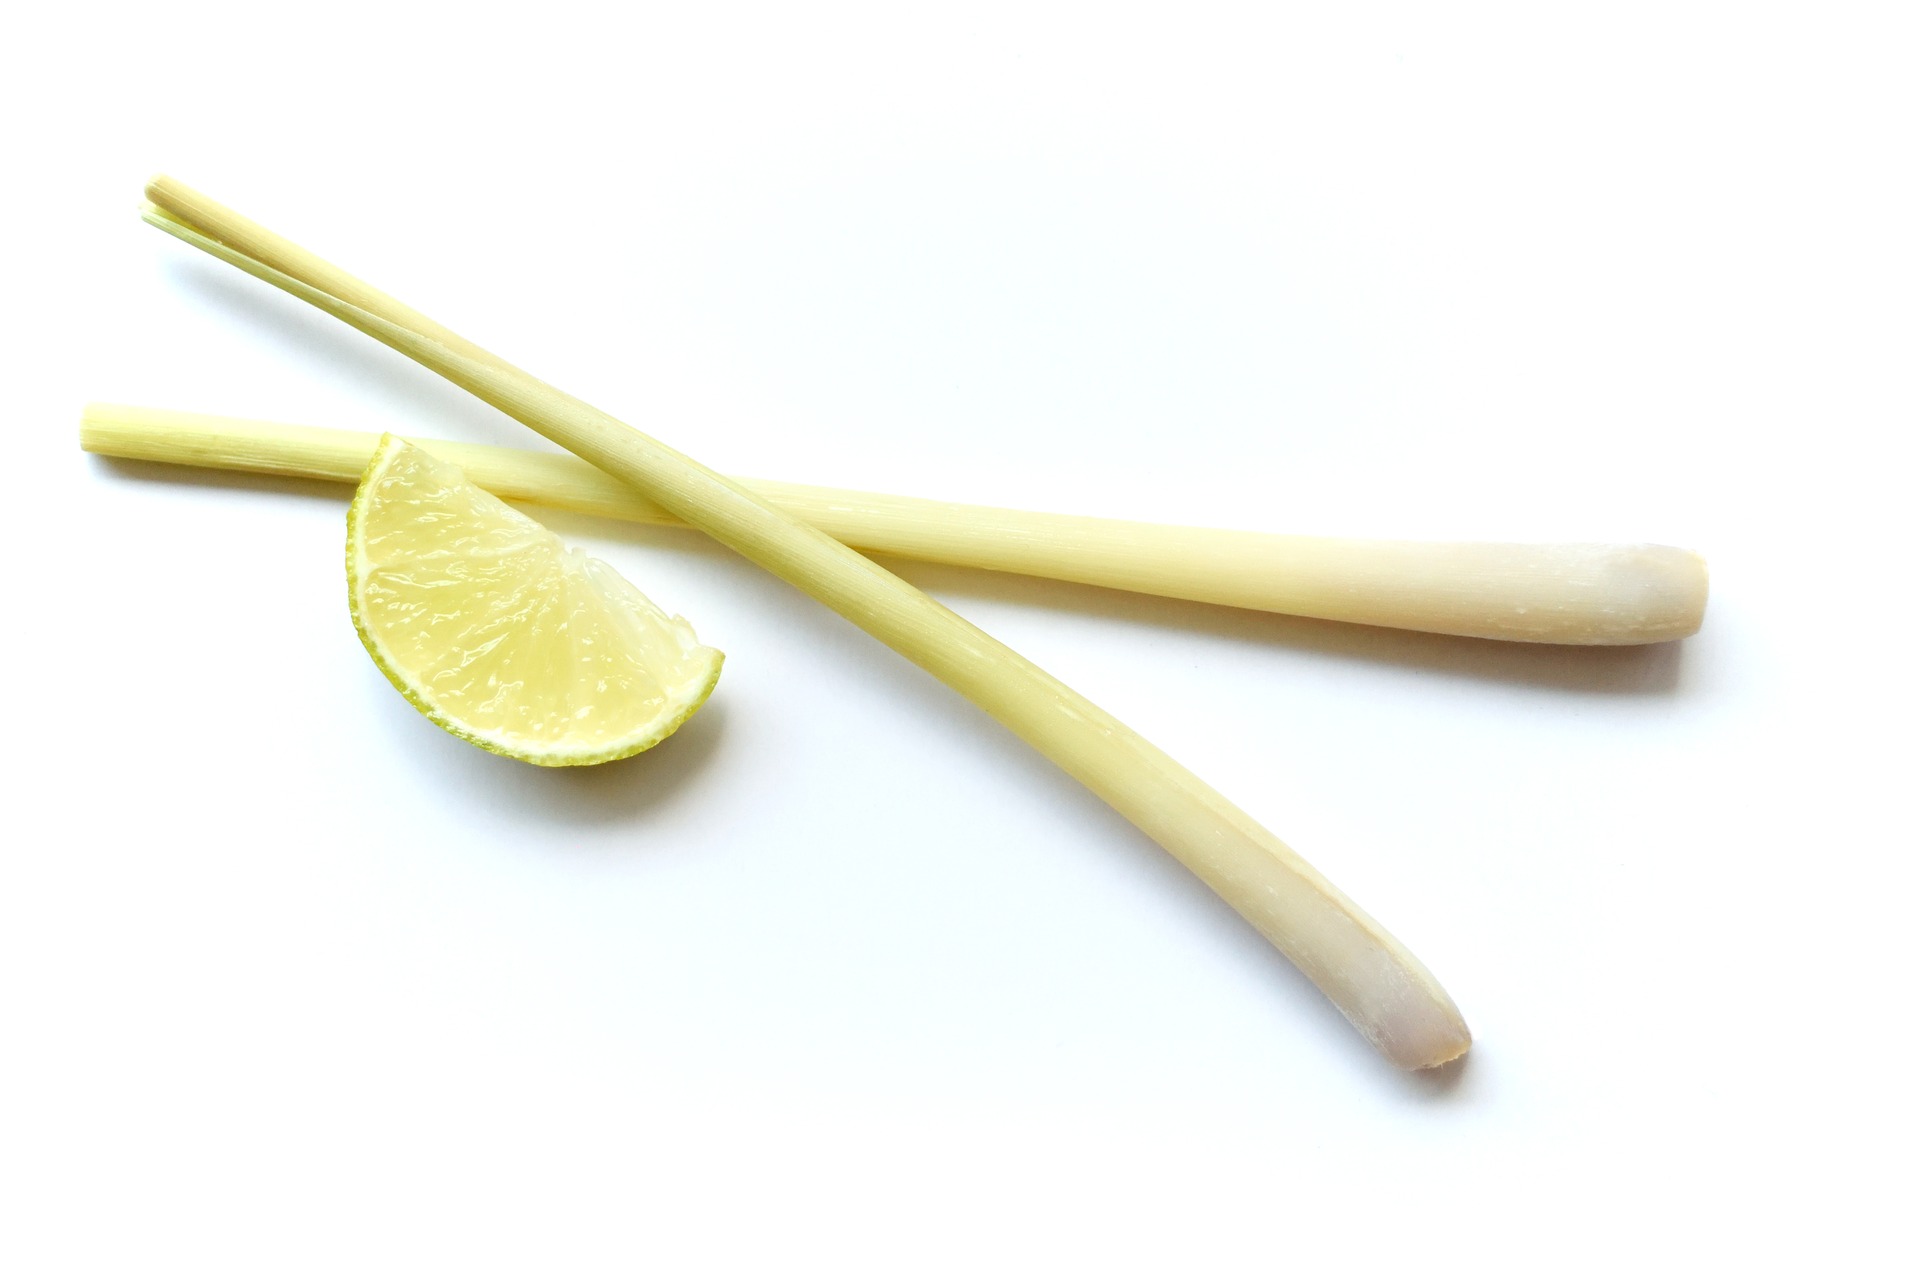 substitutes for lemongrass